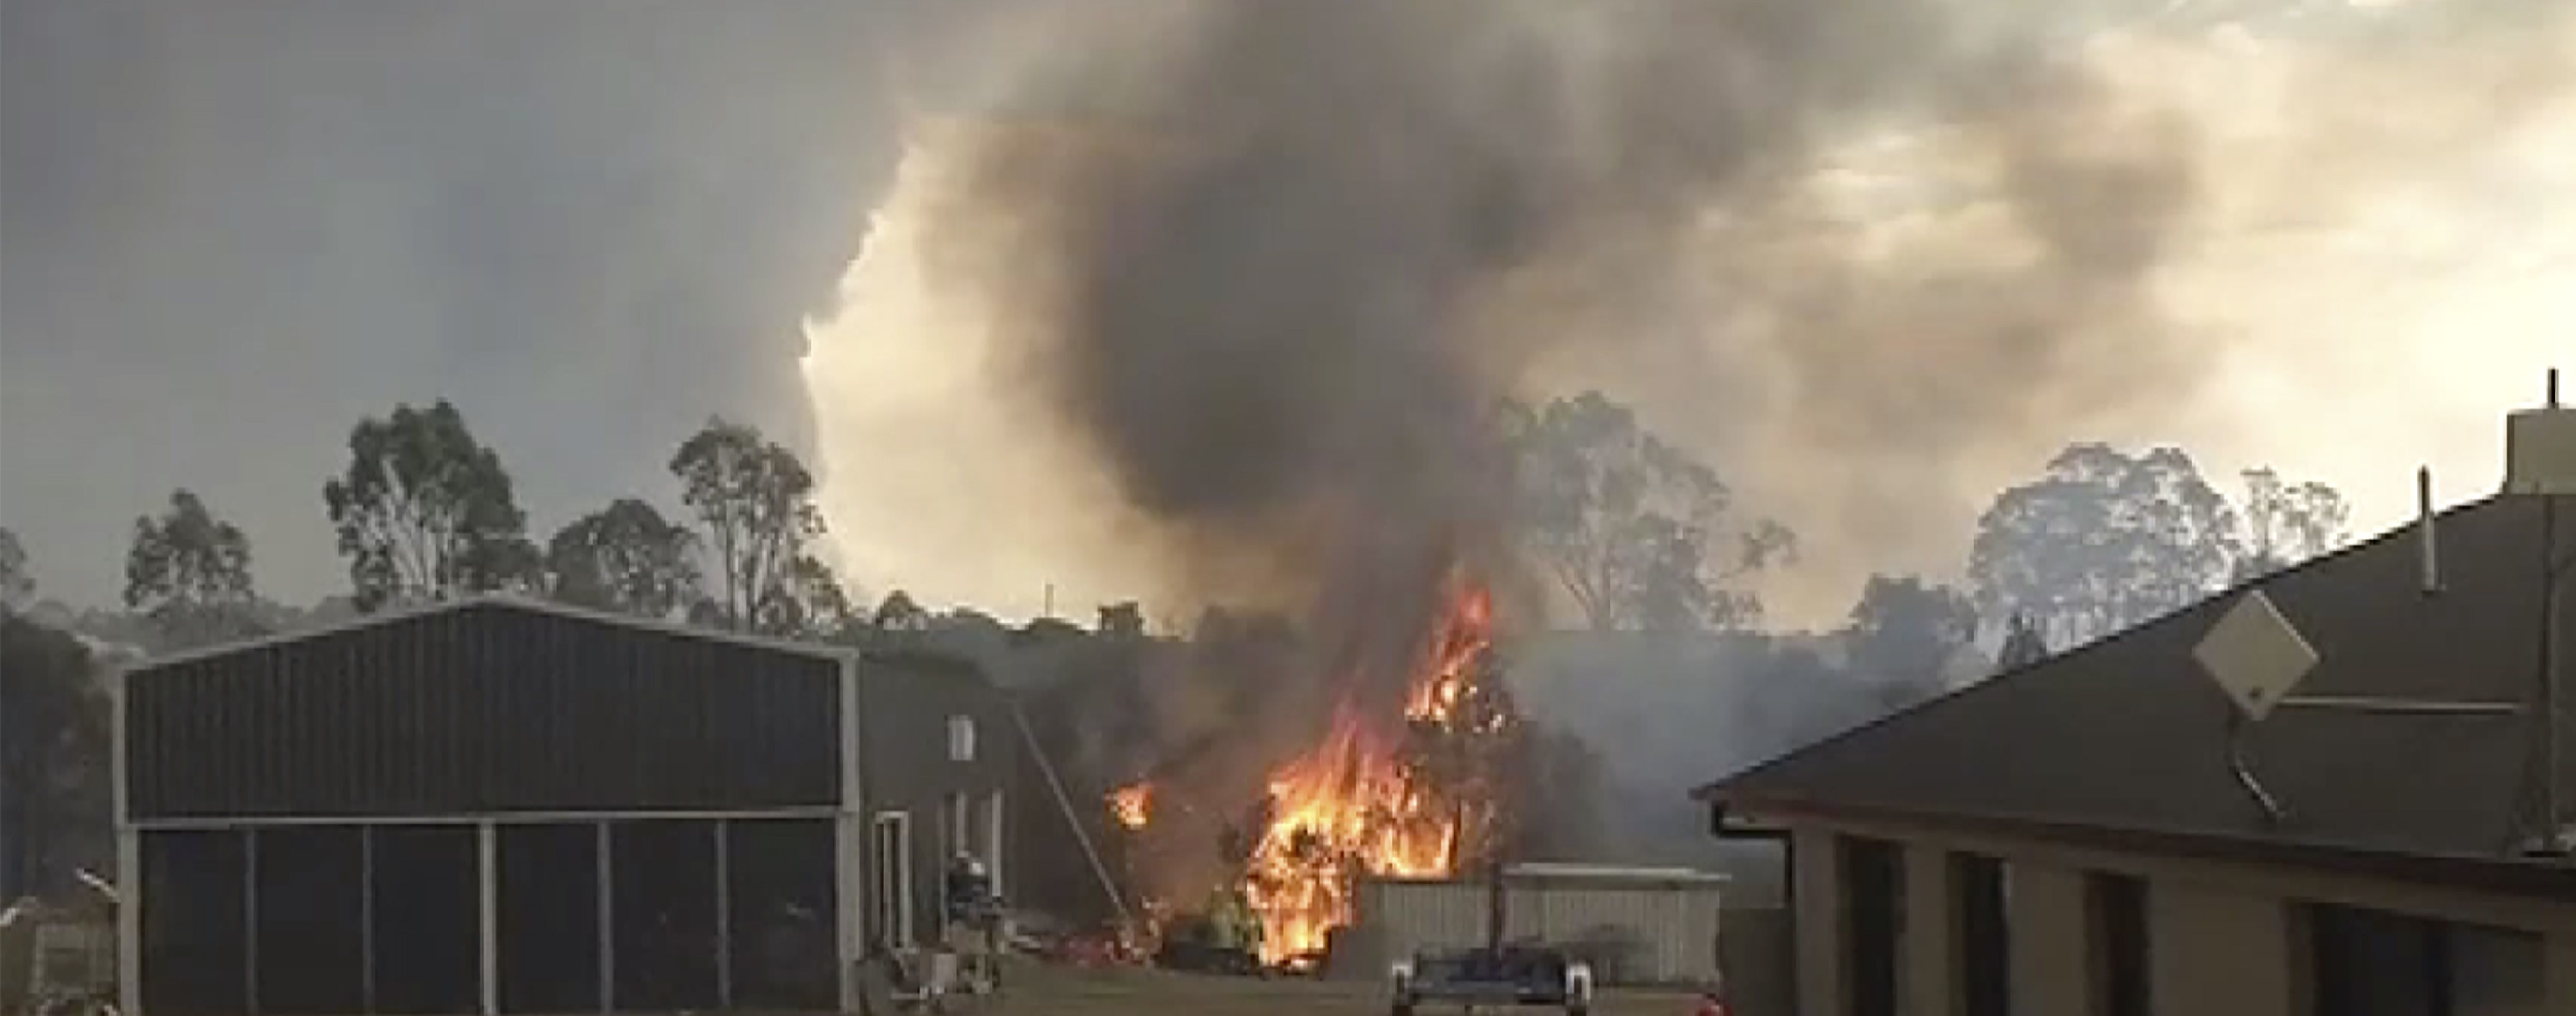 Количество погибших в пожарах в Австралии растет: известно о 24 жертвах